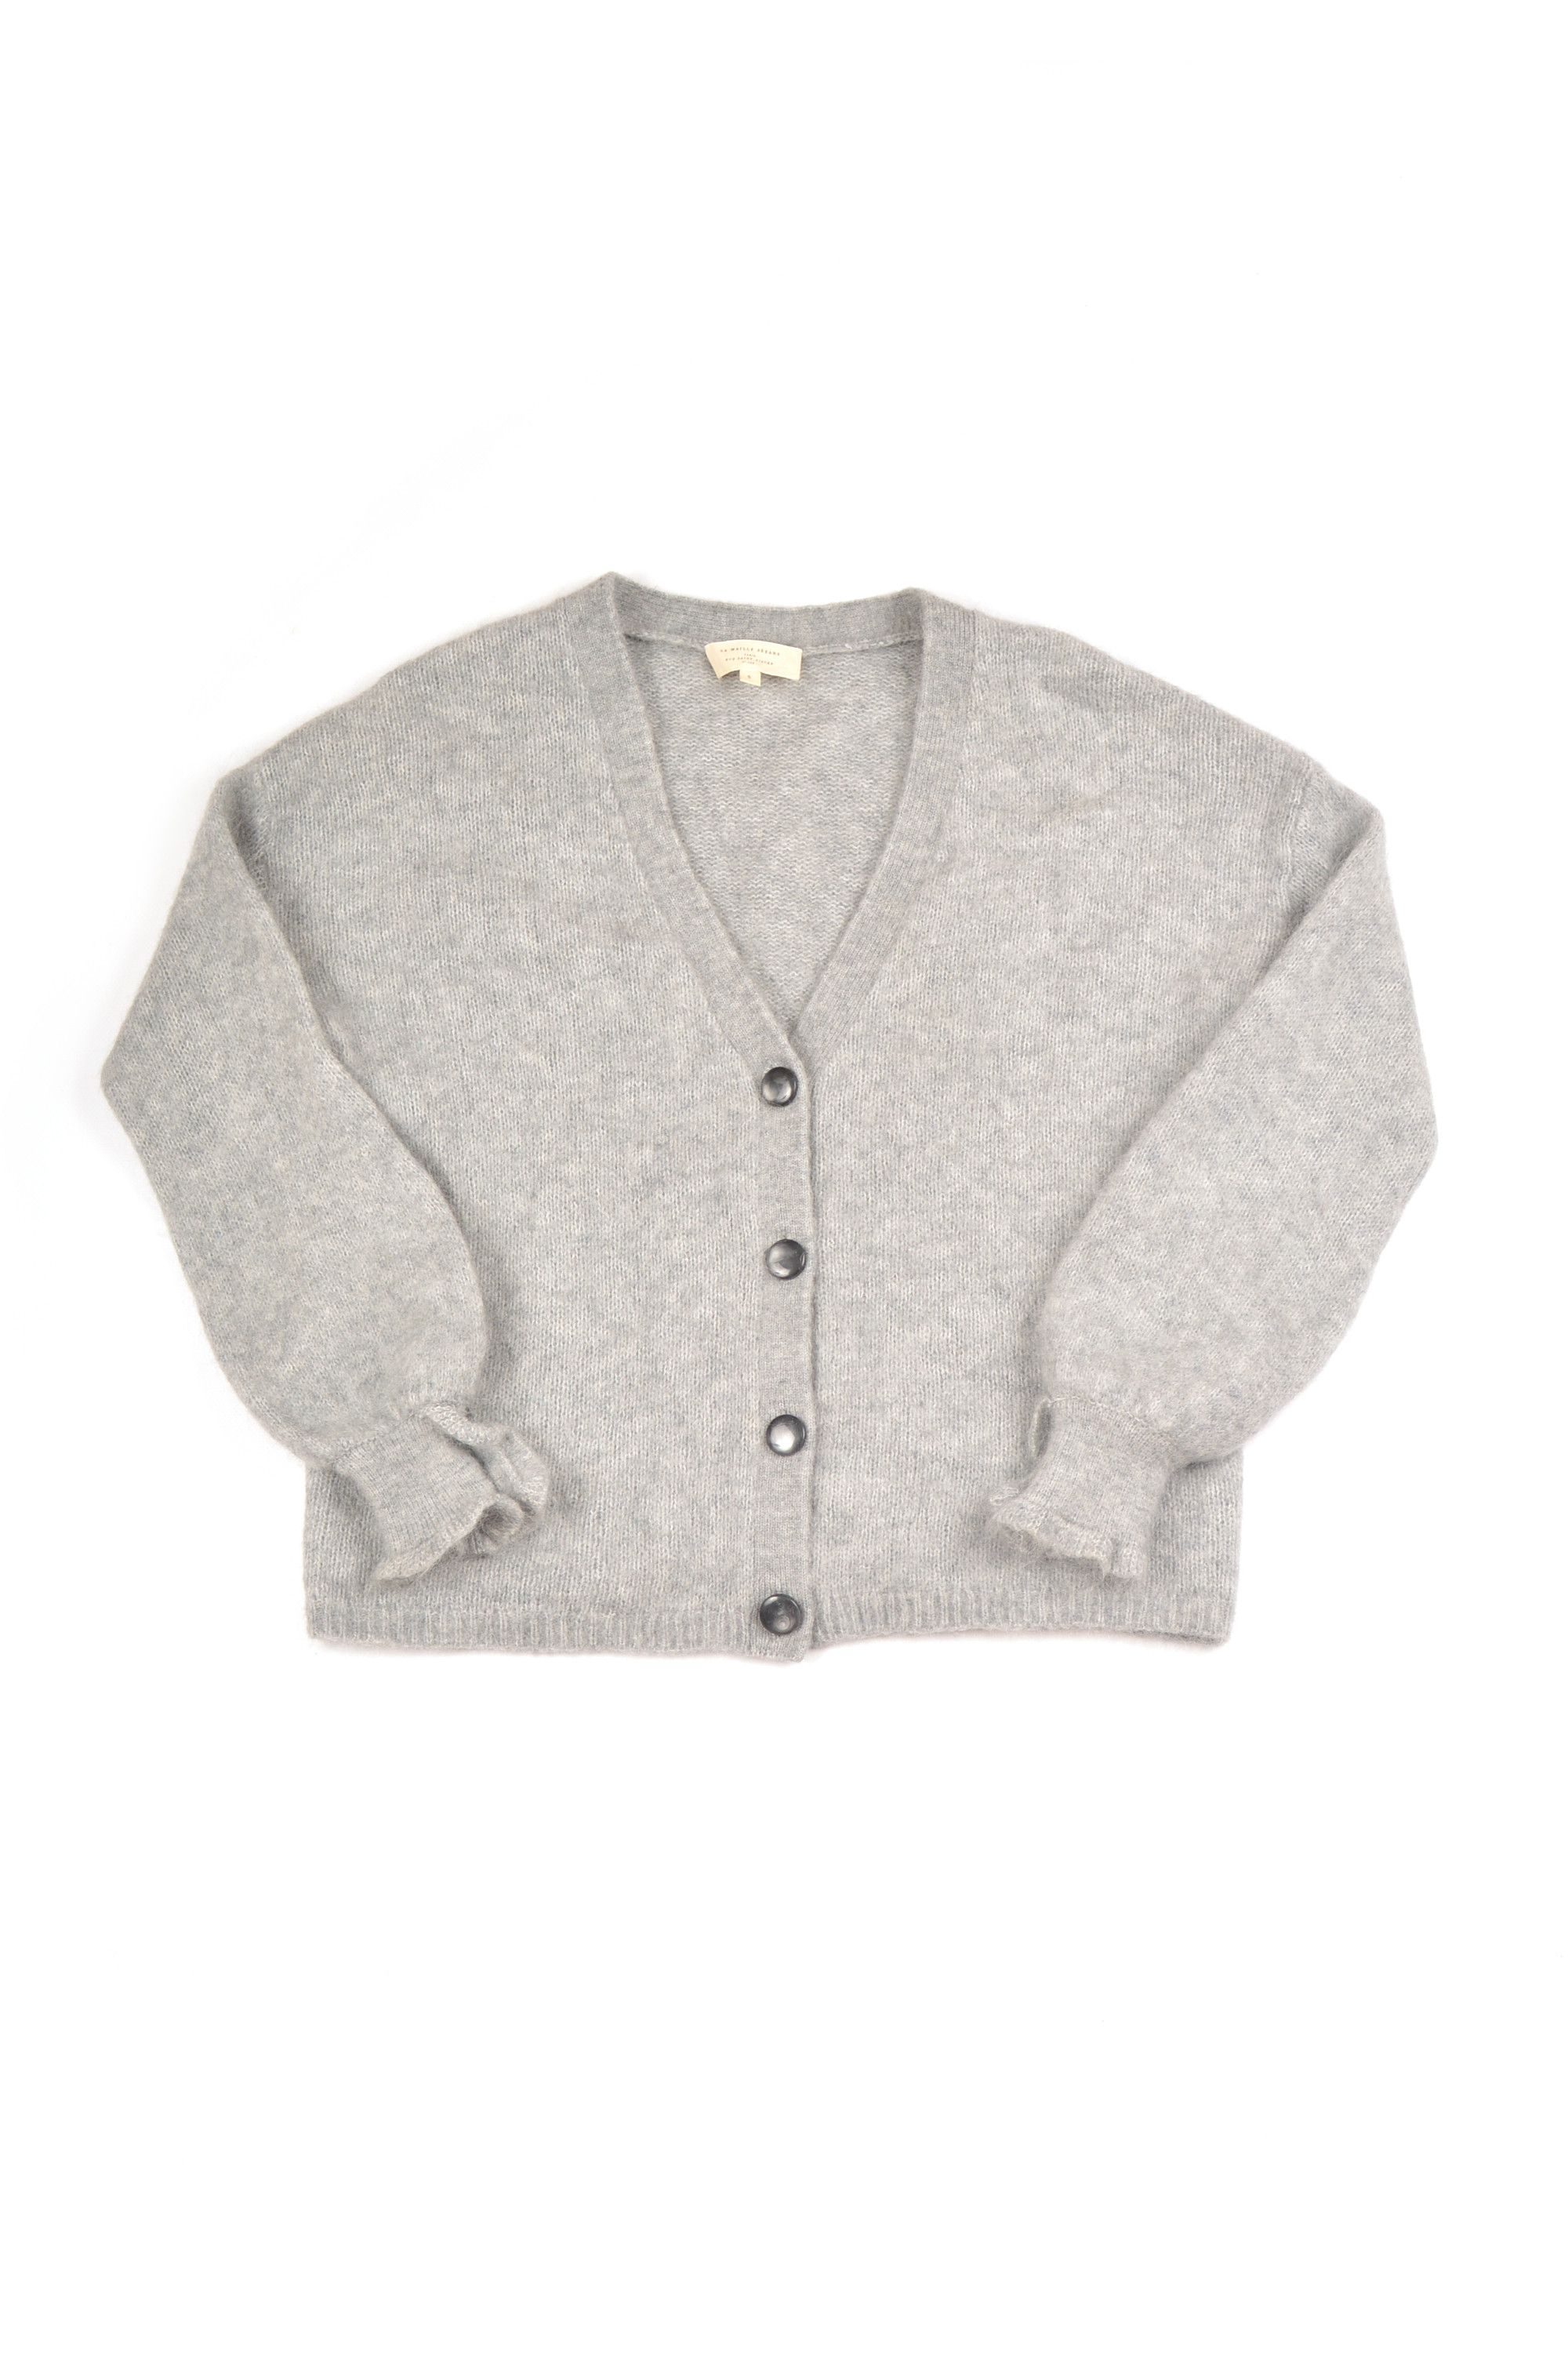 Sezane La Maille Sezane Kid Mohair Wool Blend Cardigan Sweater | Grailed